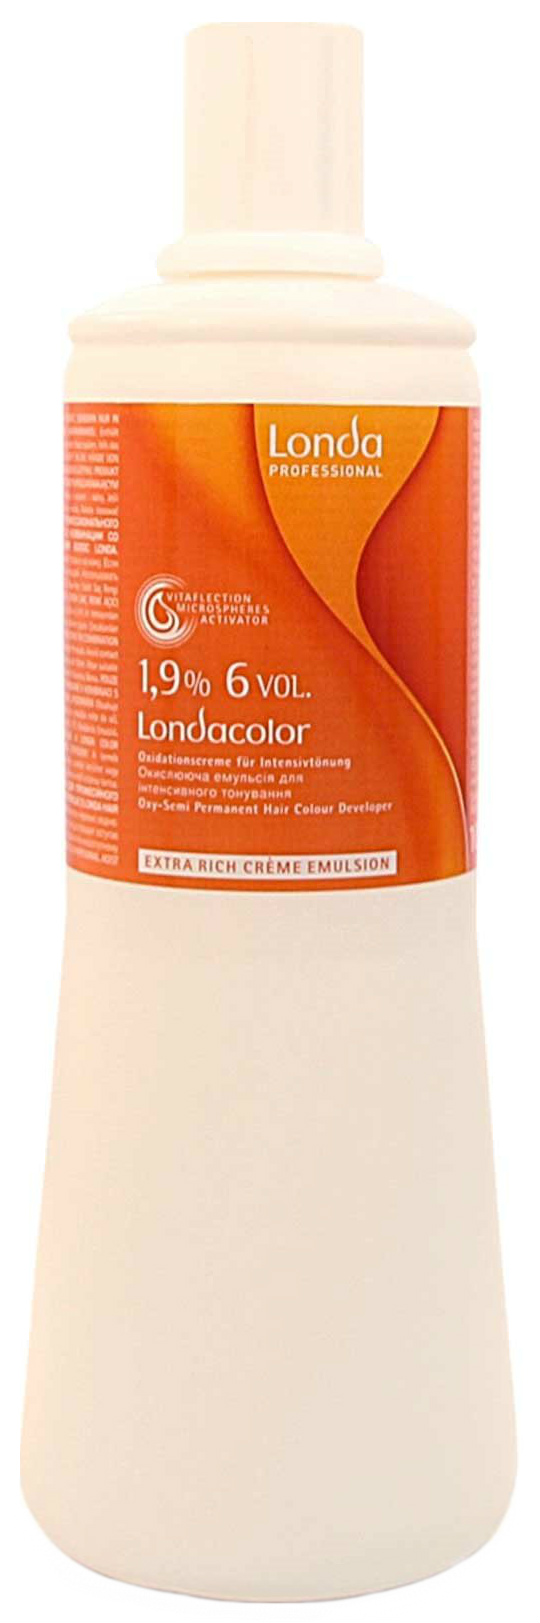 Проявитель Londa Professional Londacolor 1,9% 1 л